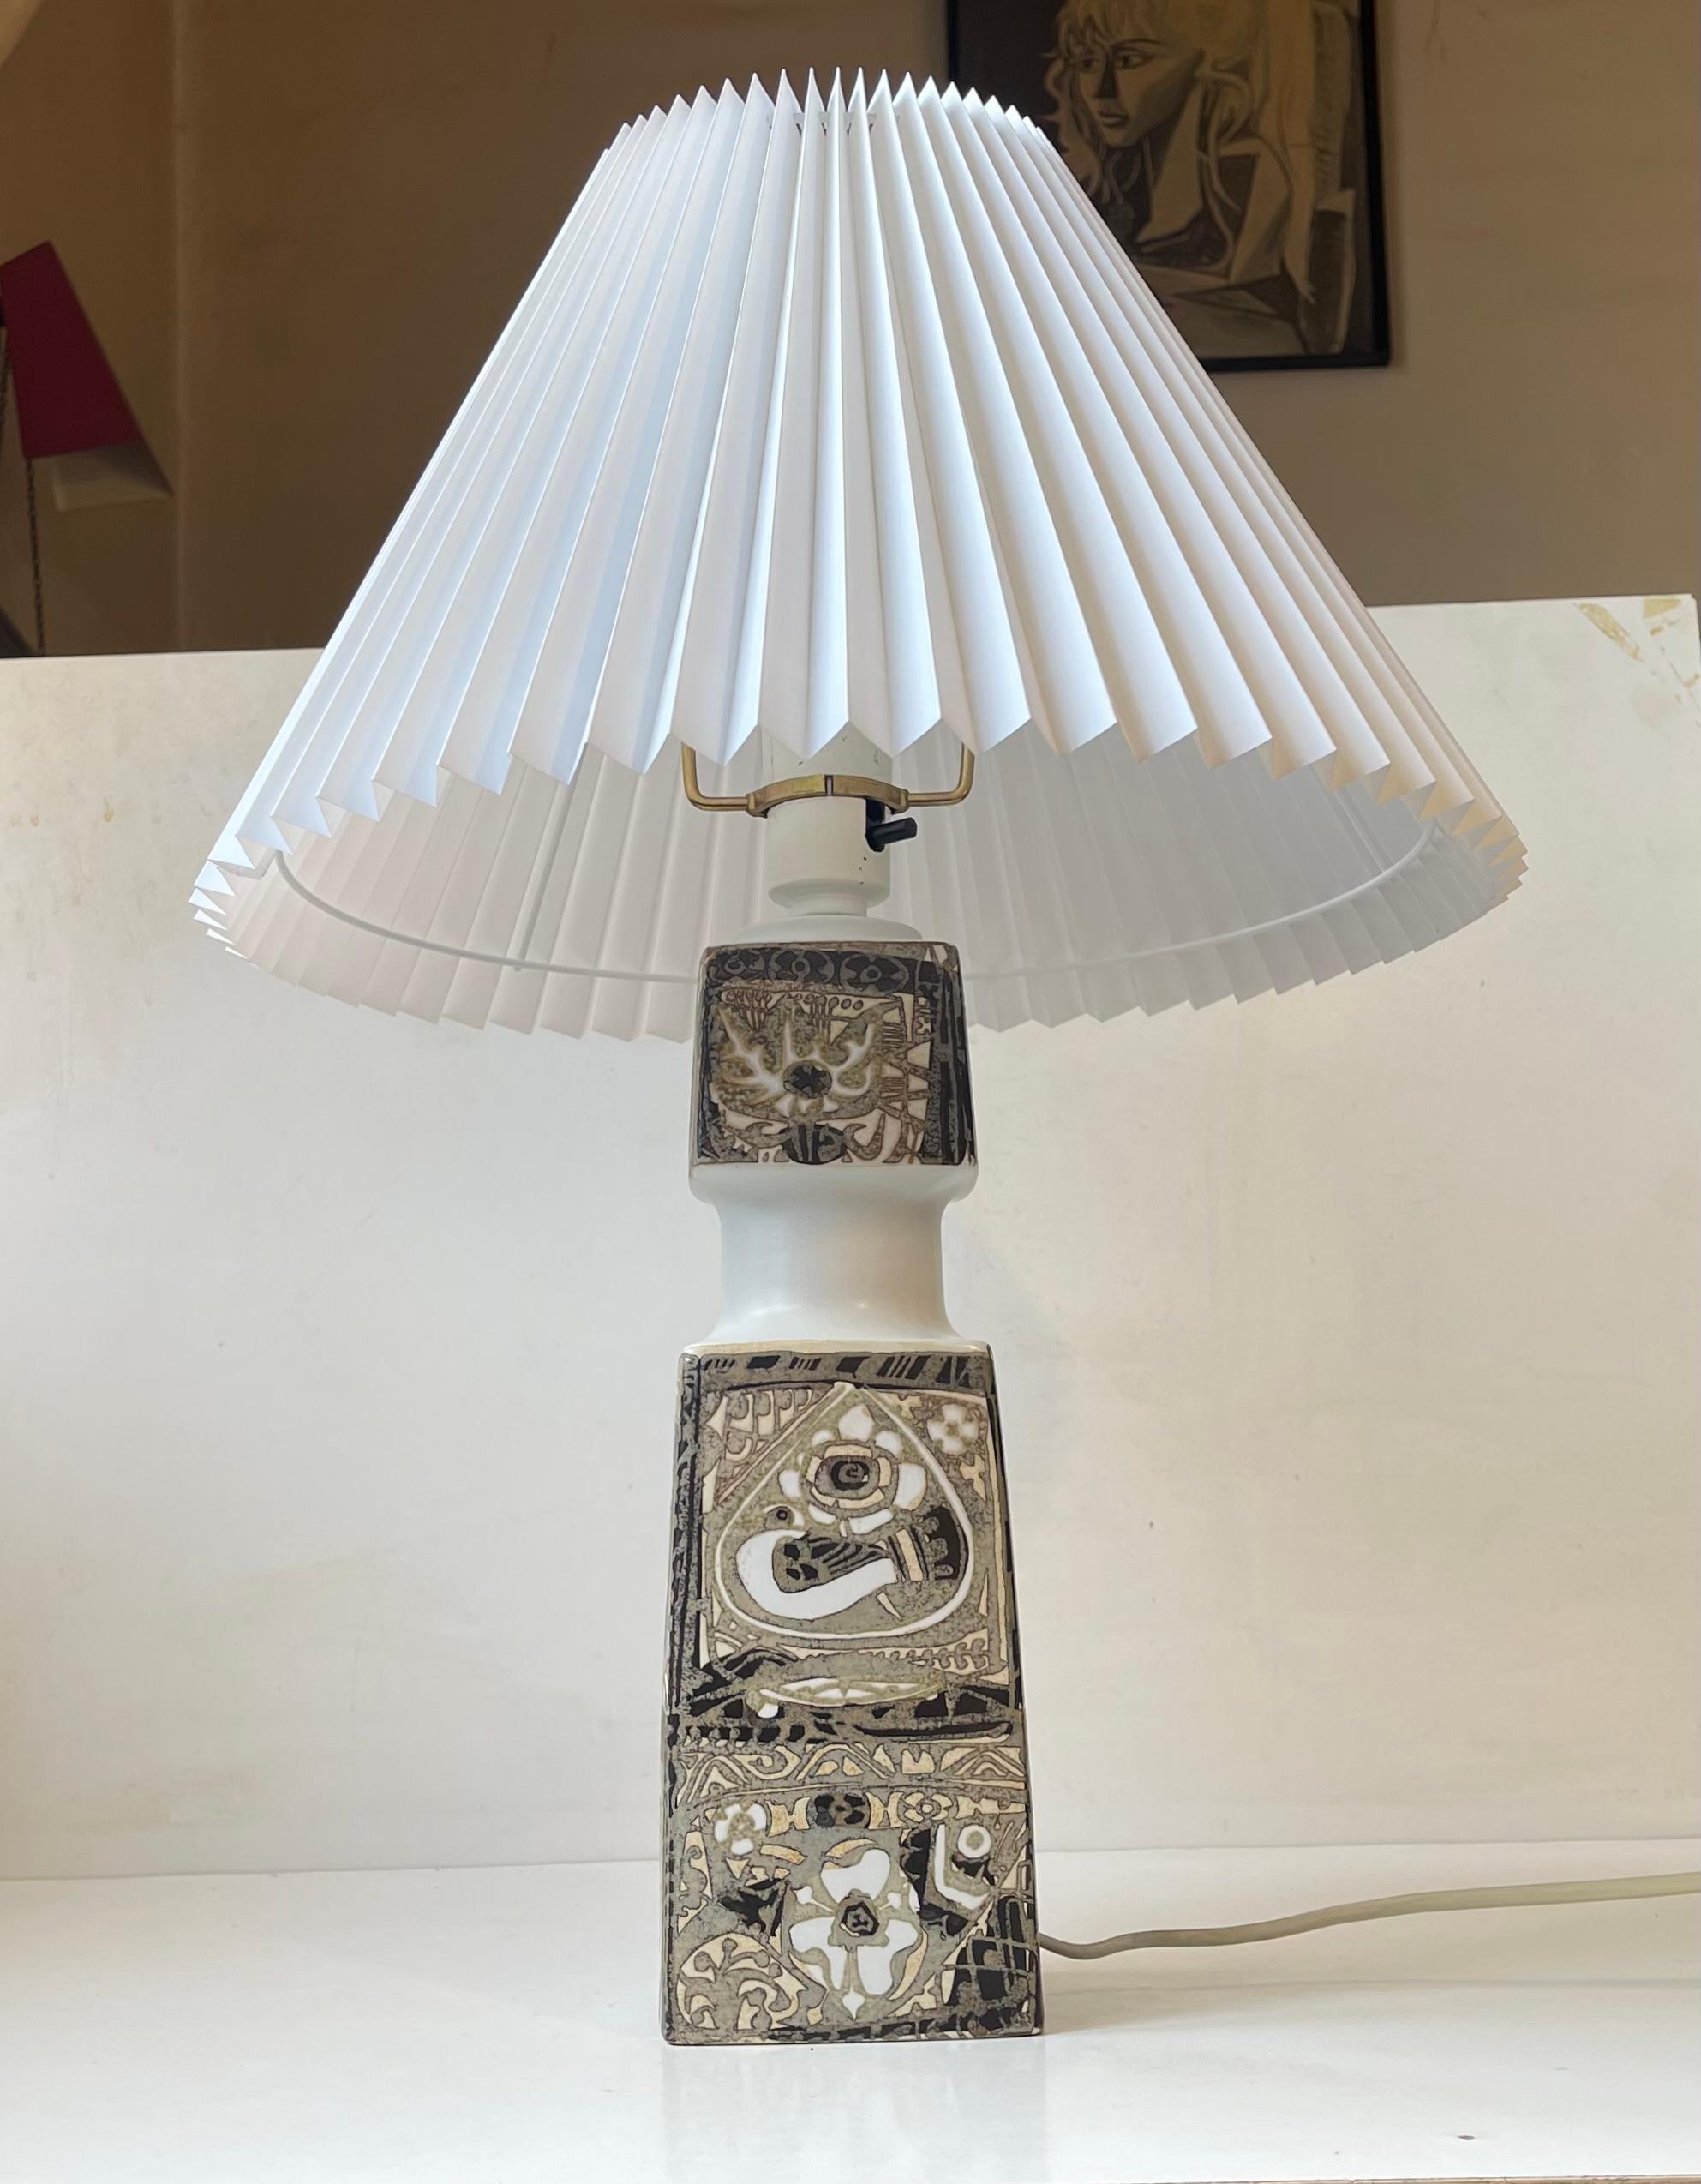 Lampe de table monumentale en céramique 'Baca' conçue par Nils Thorsson pour Royal Copenhagen et Fog & Mørup vers 1970. Il présente un décor abstrait tactile exécuté dans des glaçures éphémères. L'interrupteur marche/arrêt est fixé à la prise située